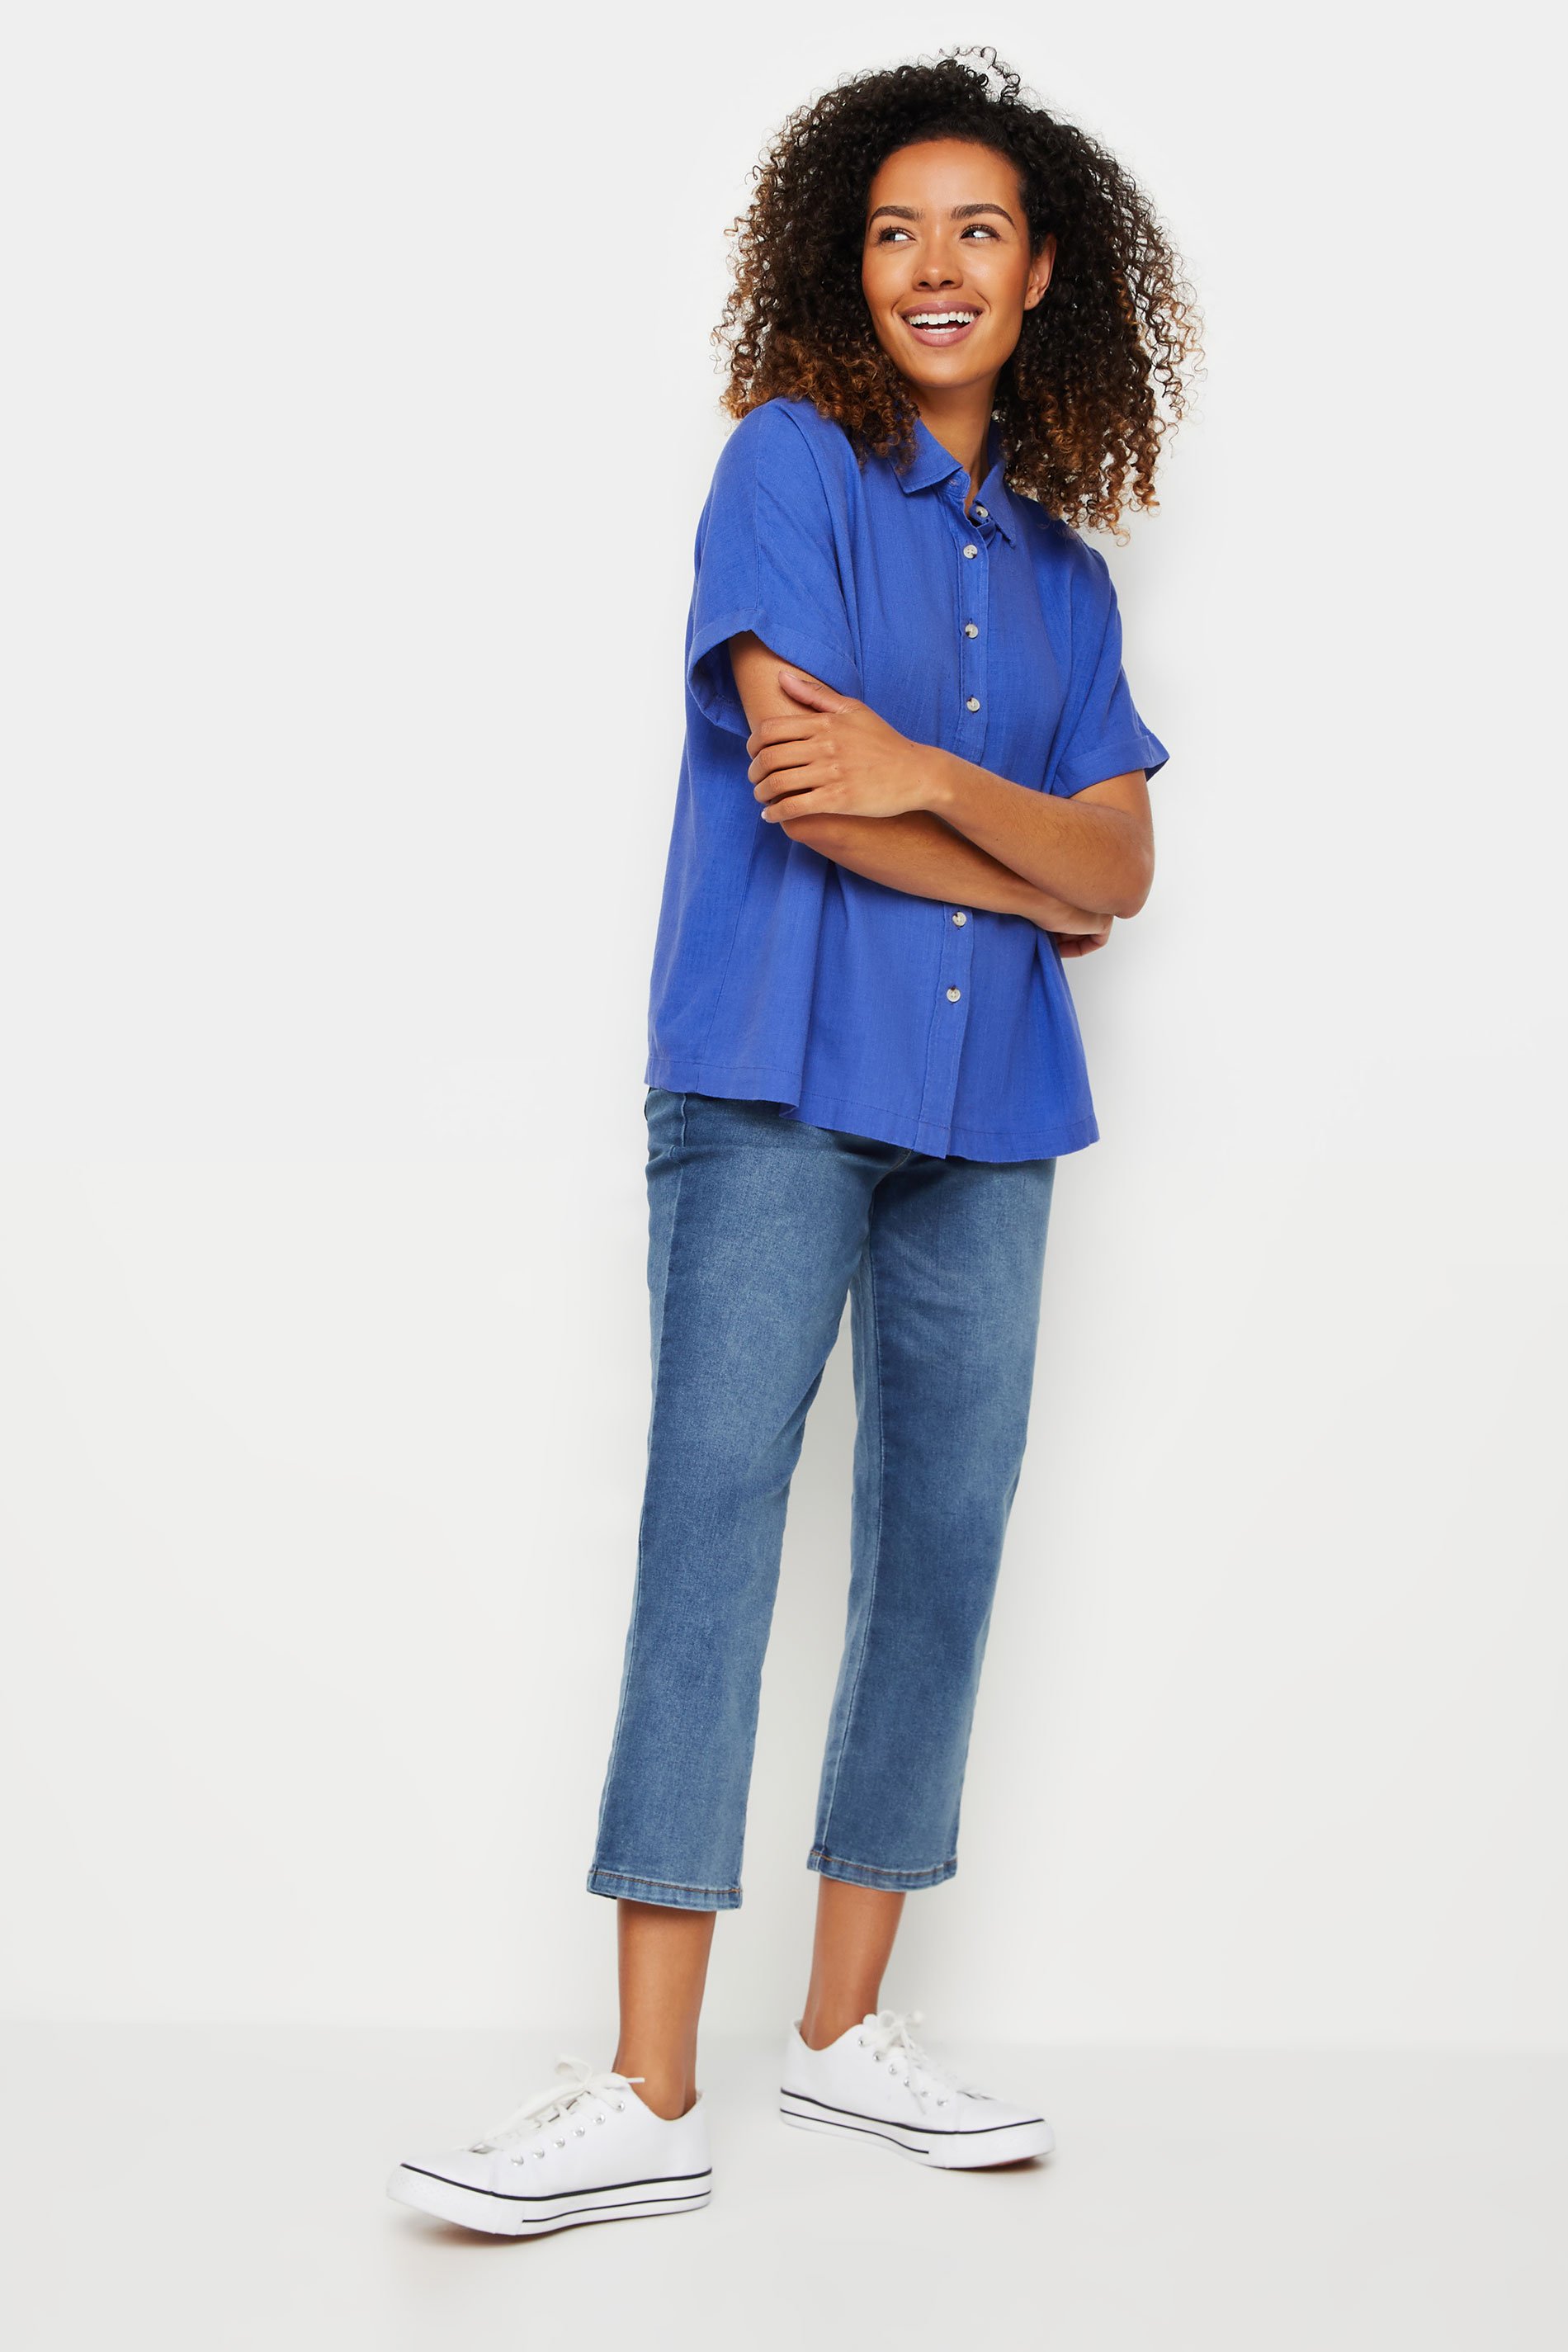 M&Co Blue Short Sleeve Linen Shirt | M&Co 2